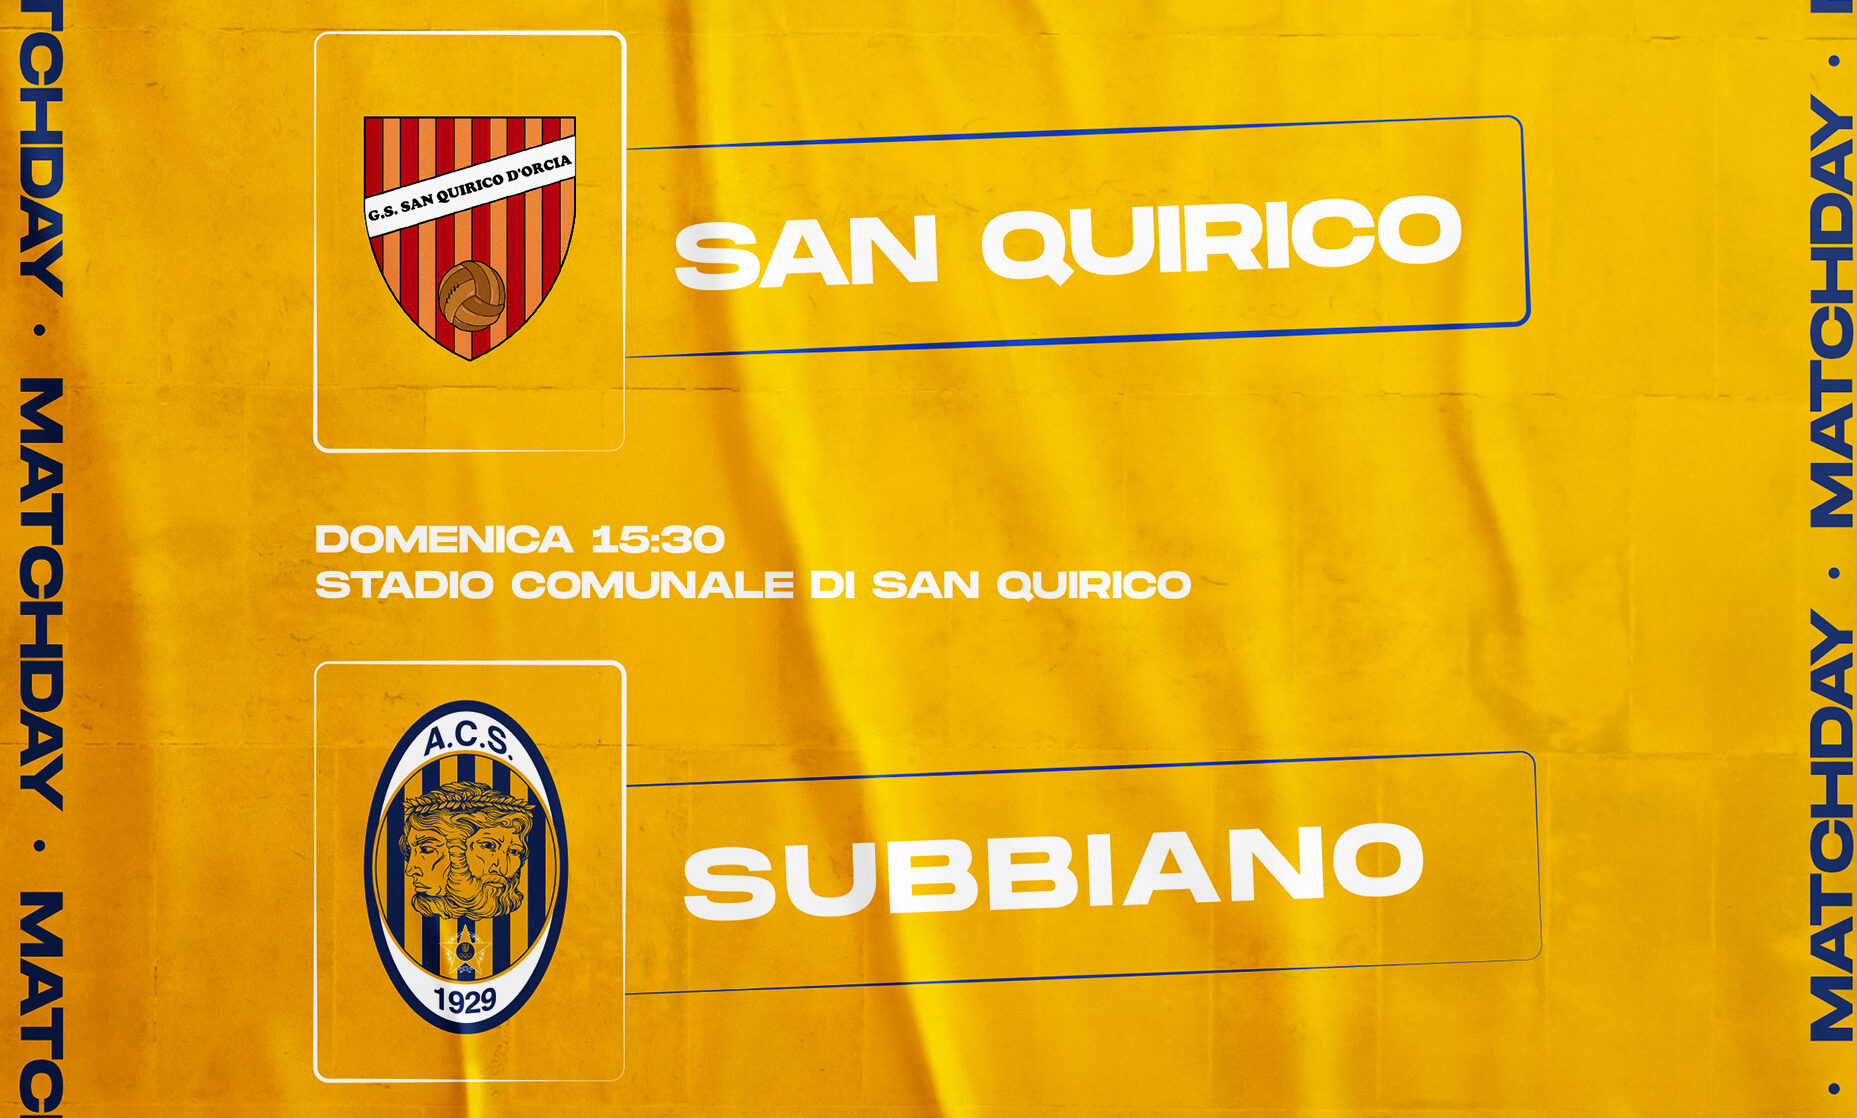 San Quirico vs Subbiano: 1 – 1